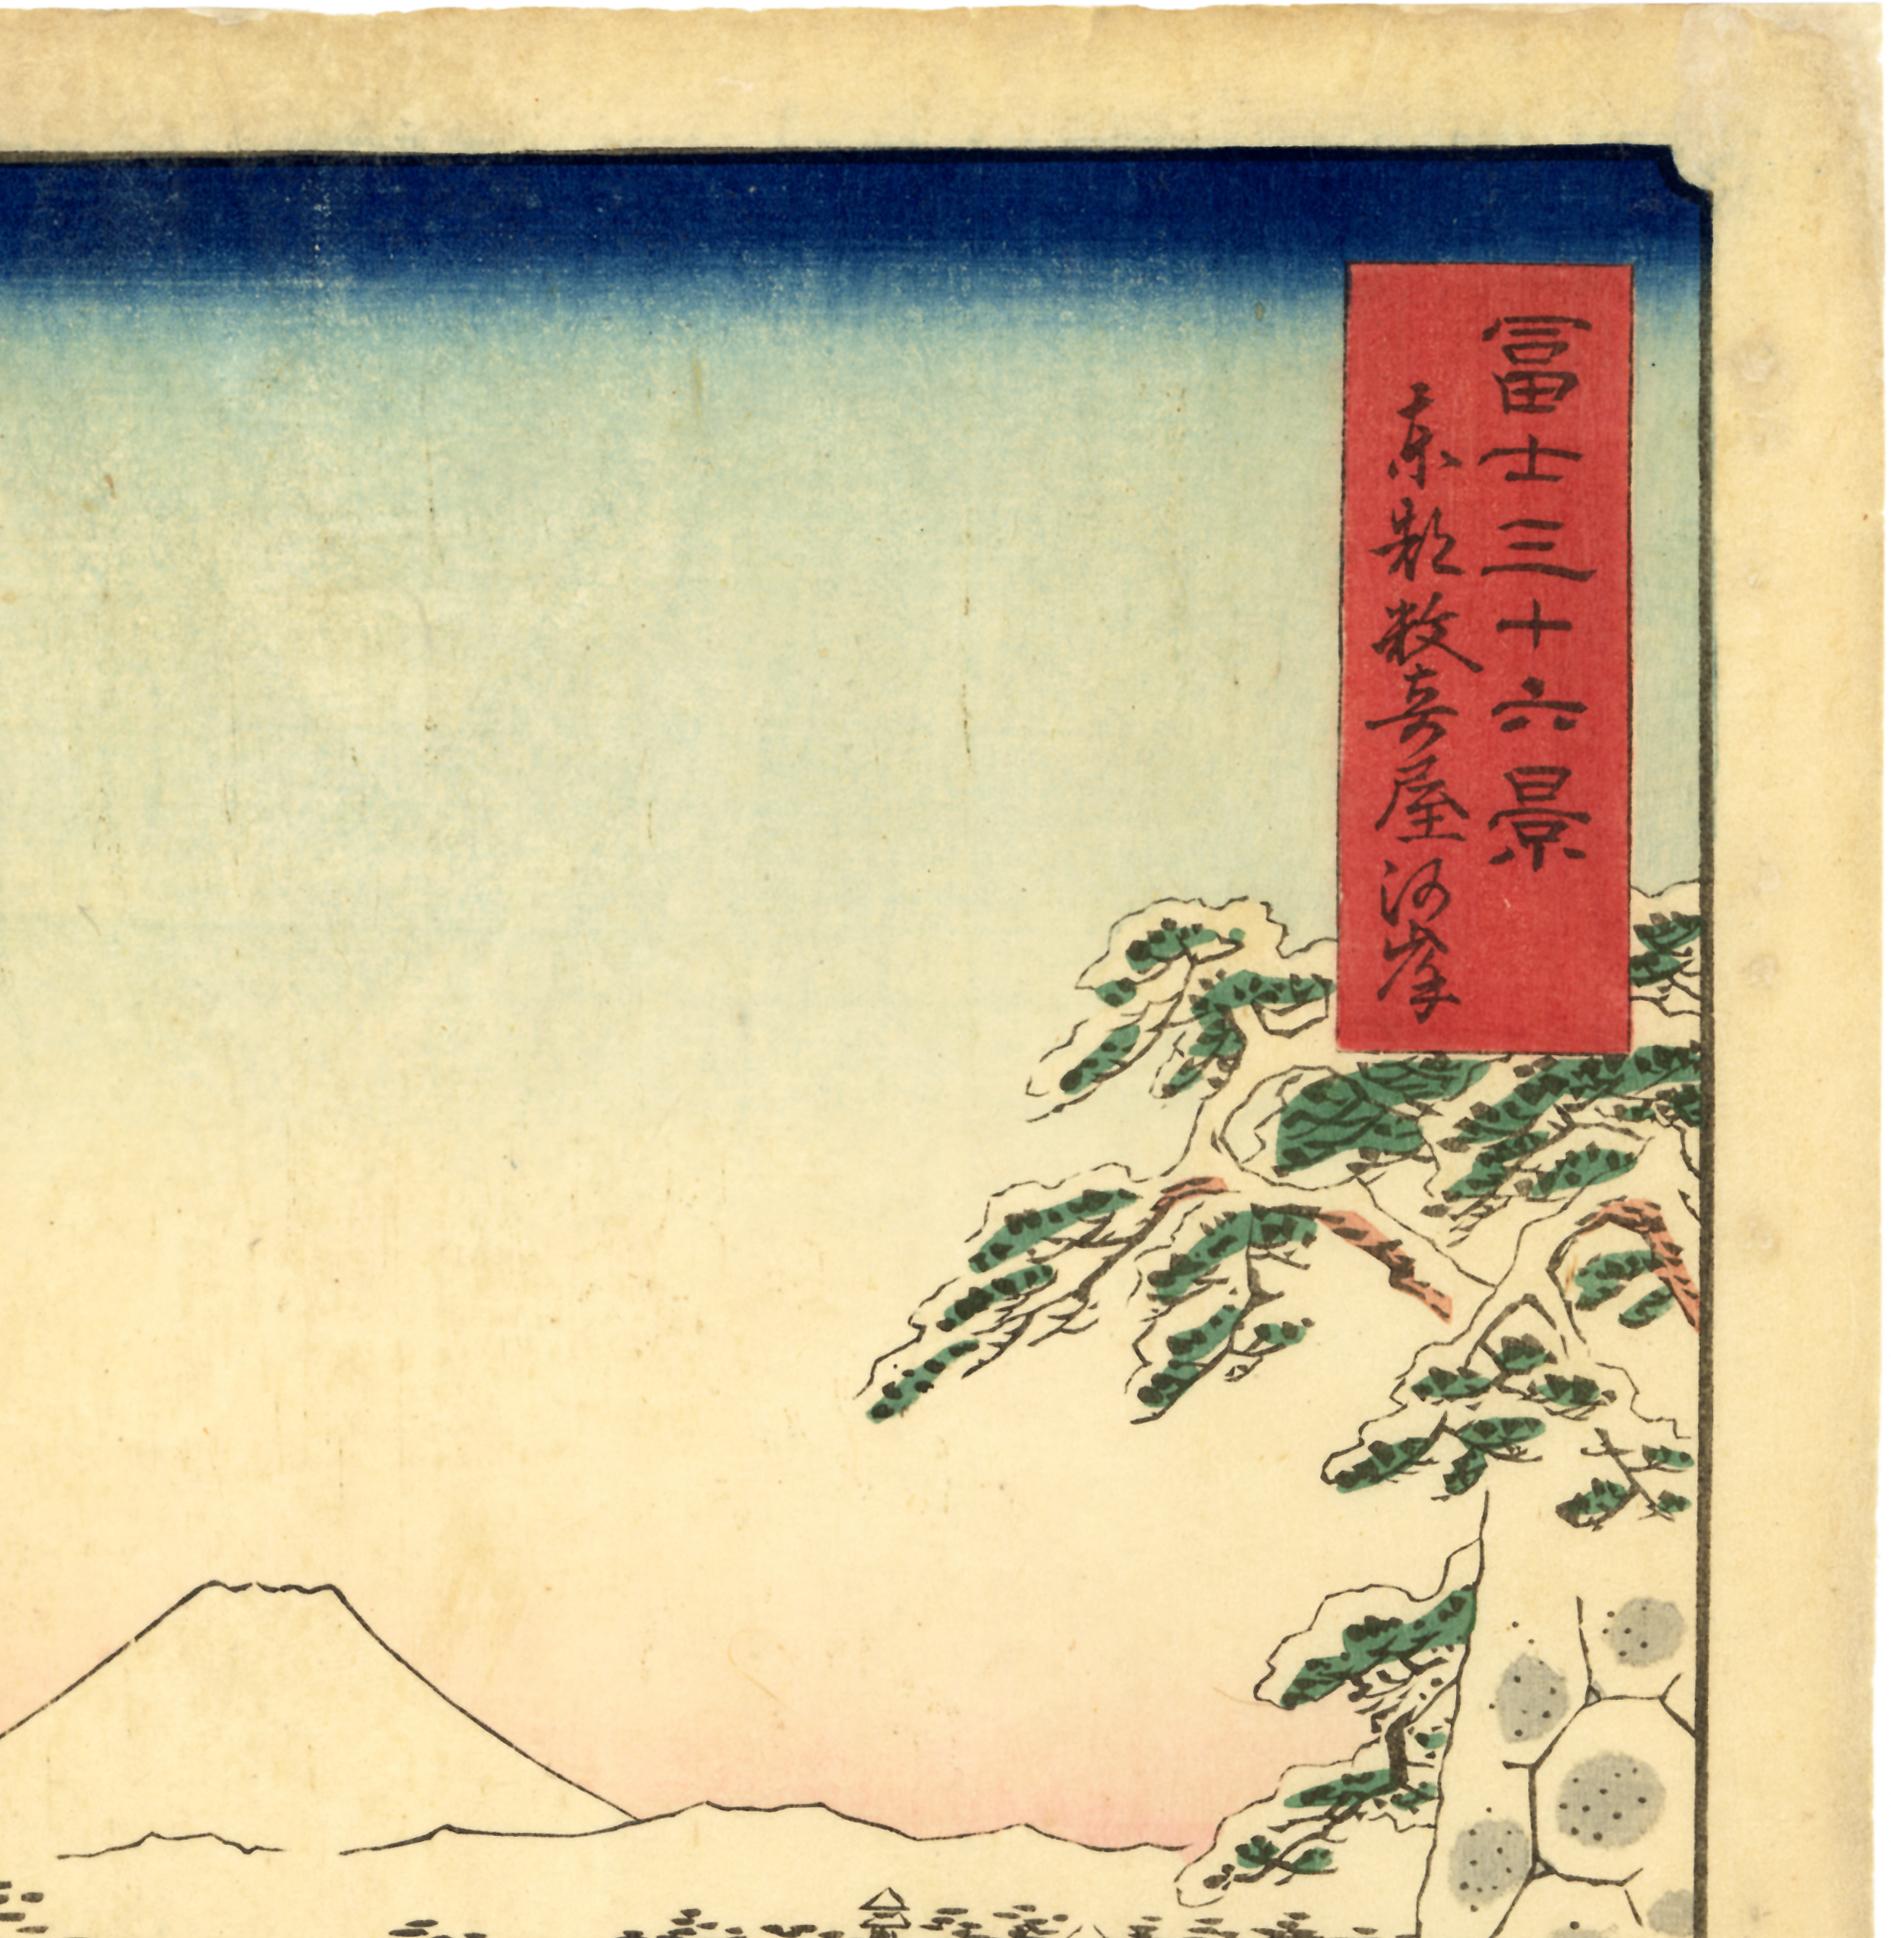 Snow at Sukiyagashi from 36 Views of Mt Fuji - Beige Landscape Print by Utagawa Hiroshige (Ando Hiroshige)